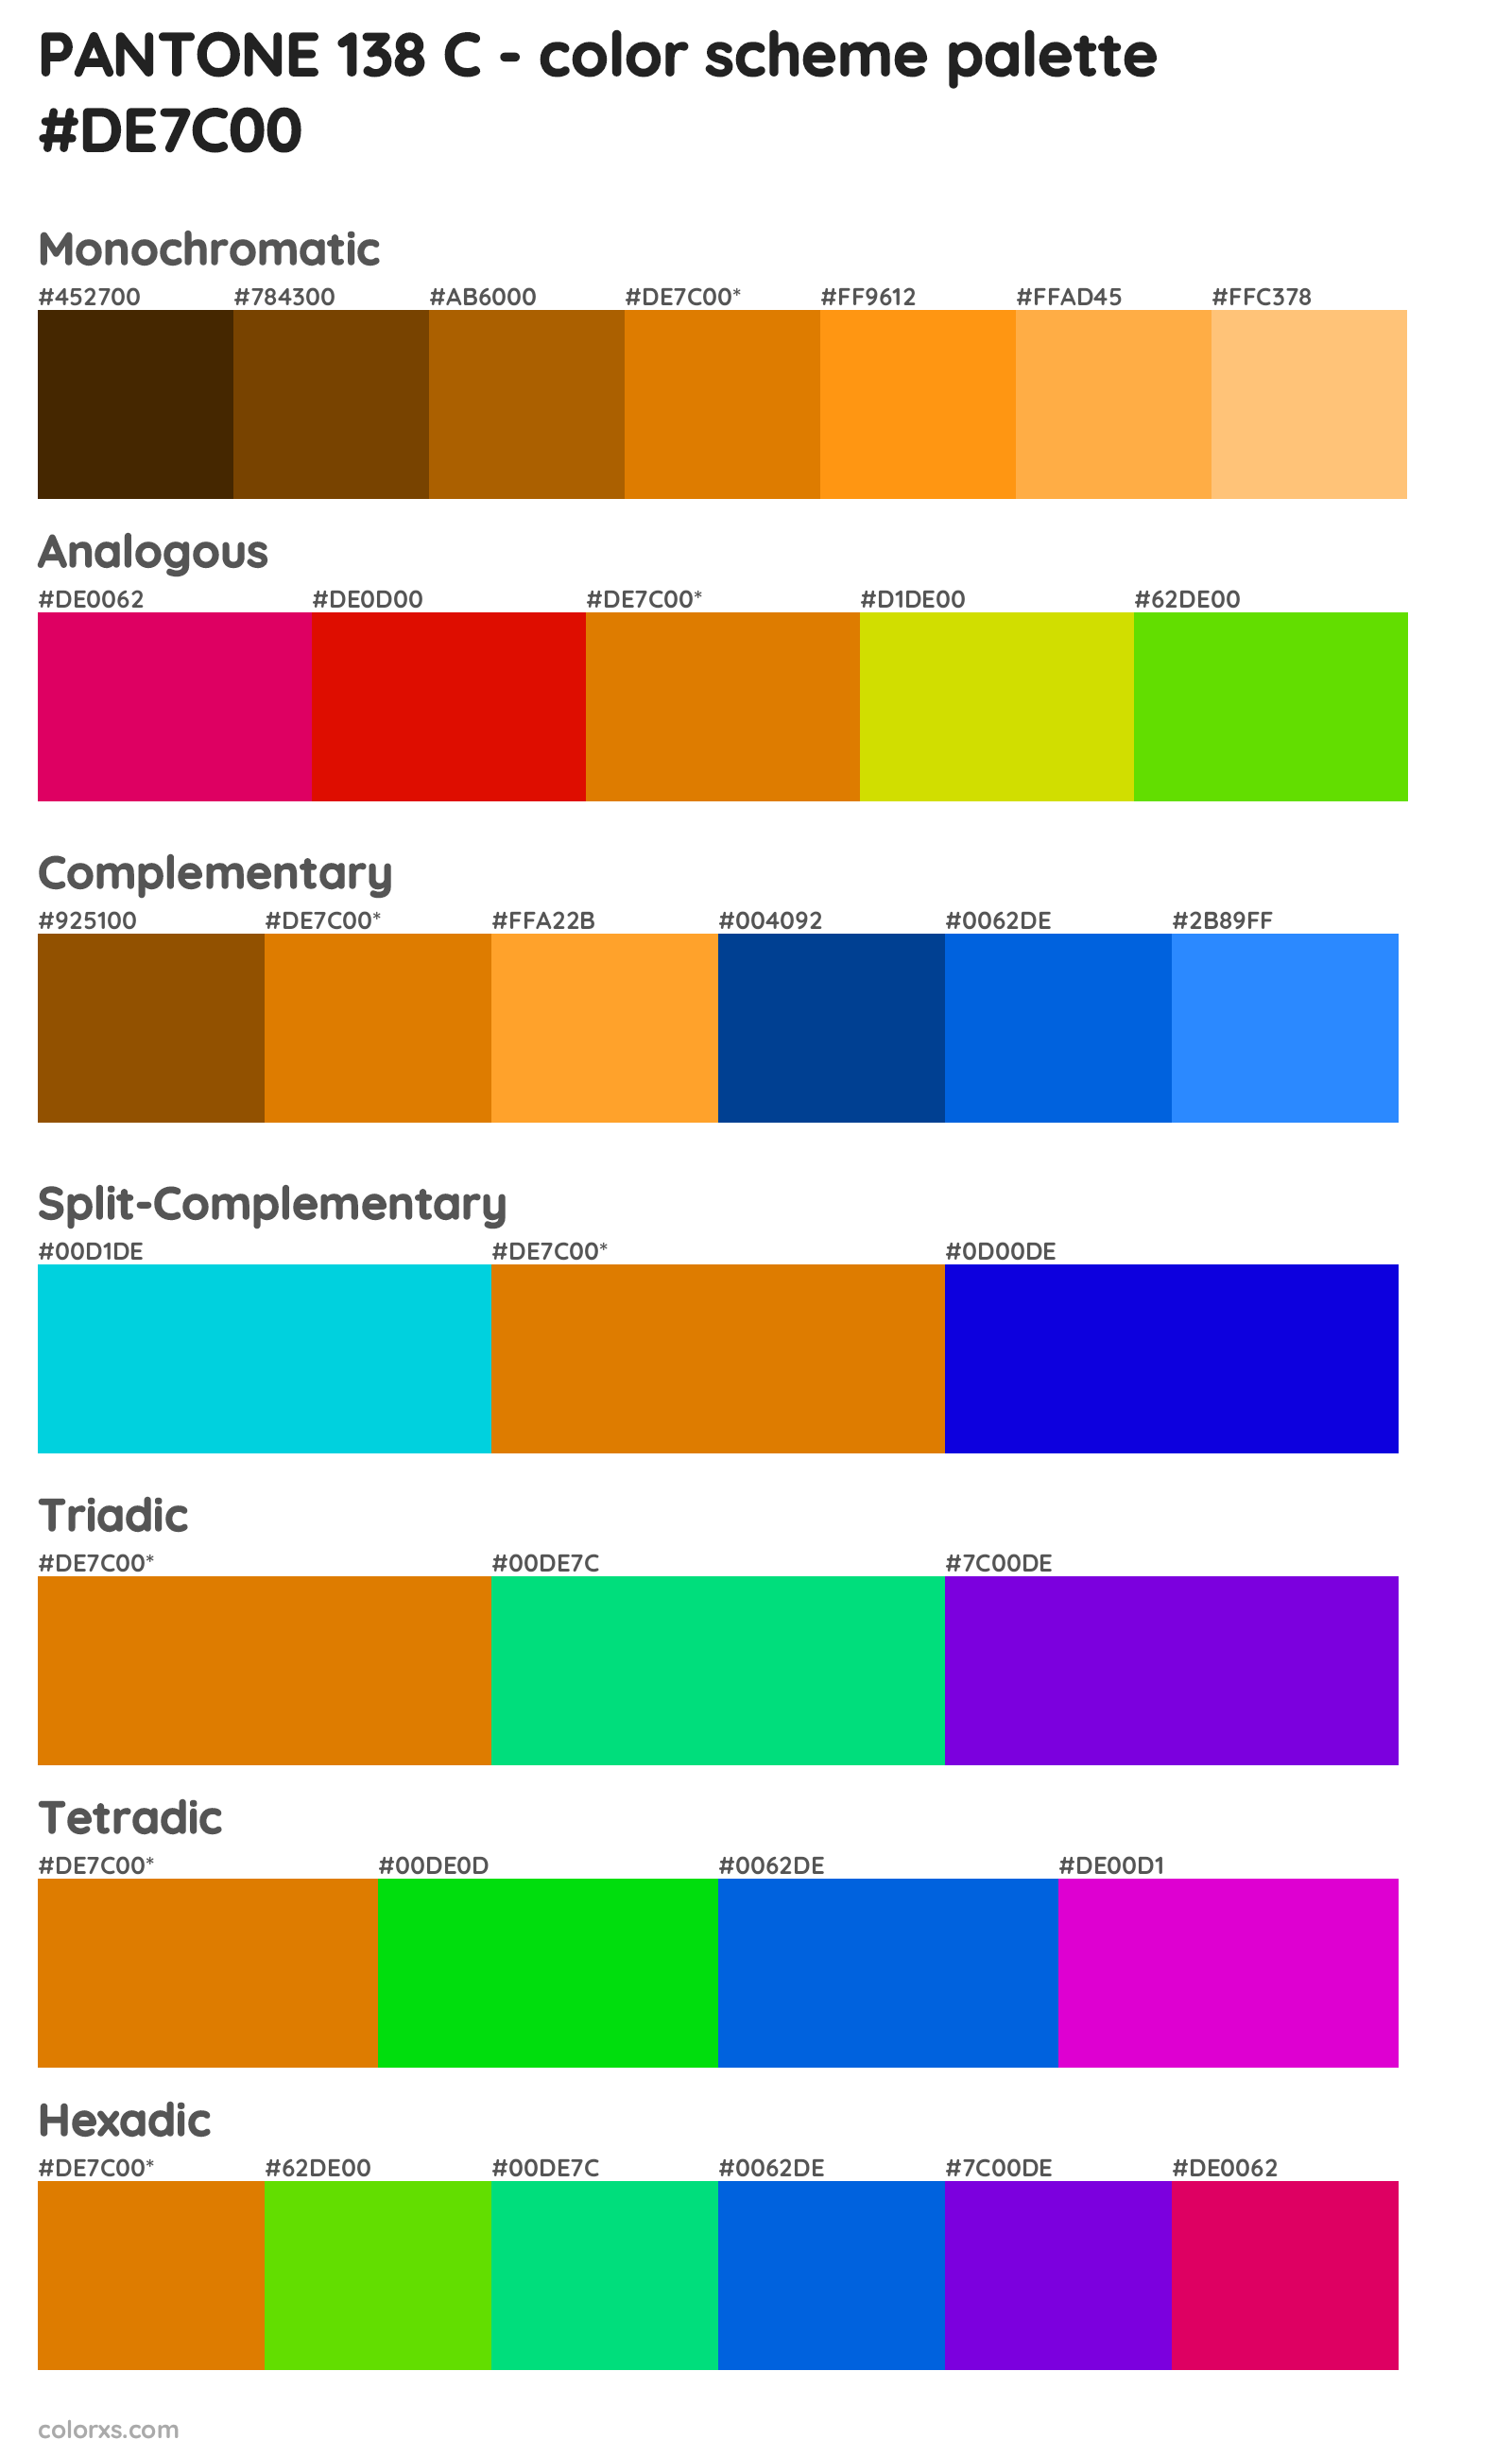 PANTONE 138 C Color Scheme Palettes